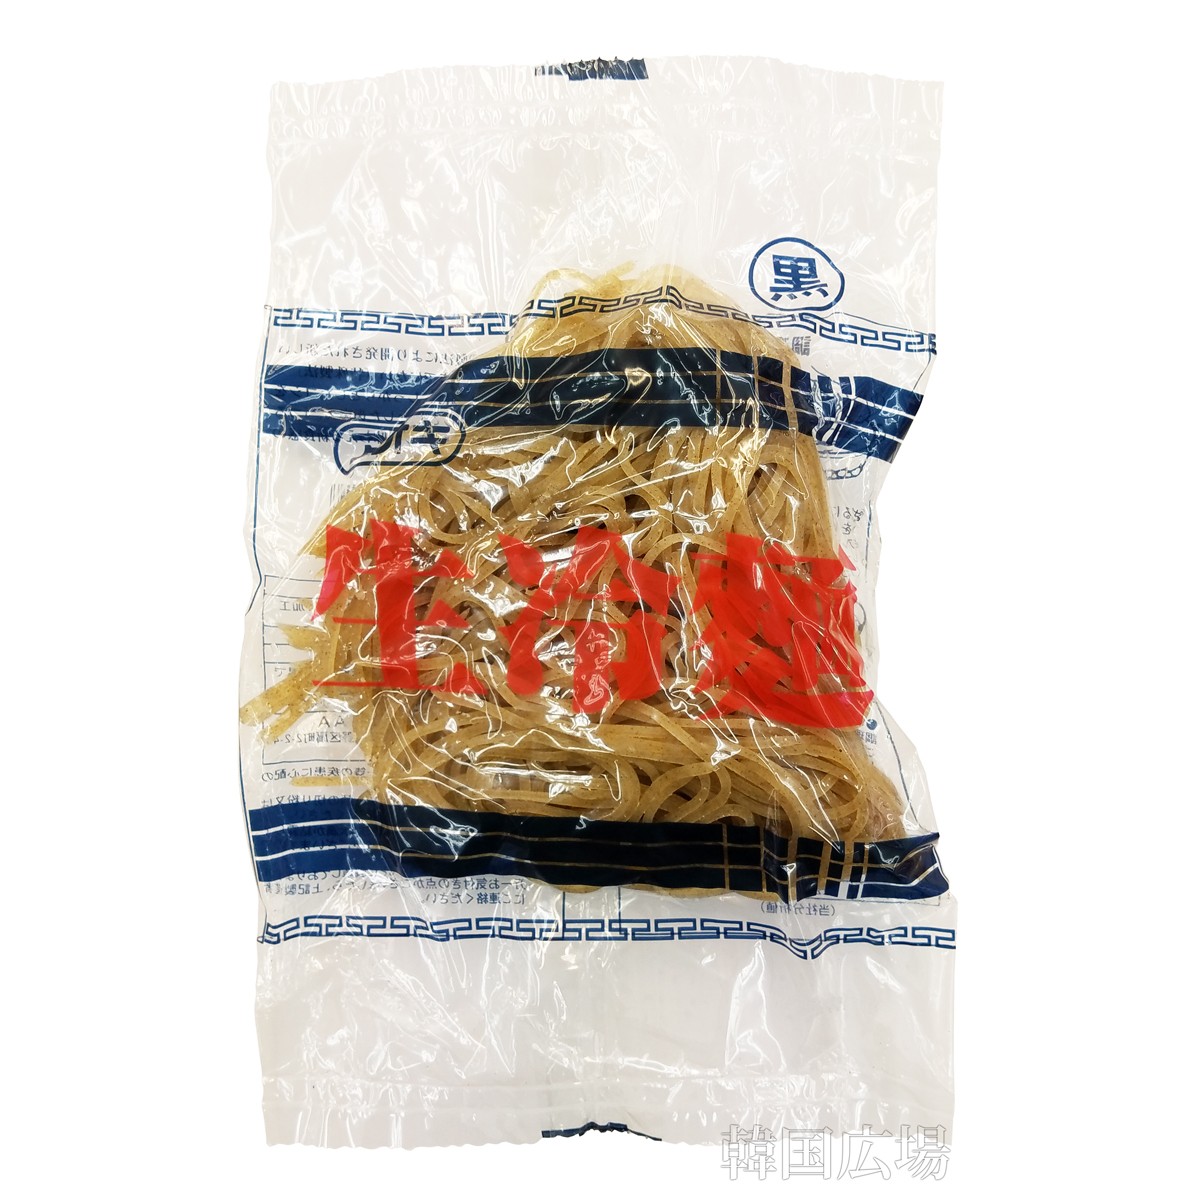 アオキ 生冷麺 160g 黒×1袋 麺類 韓国冷麺の商品画像